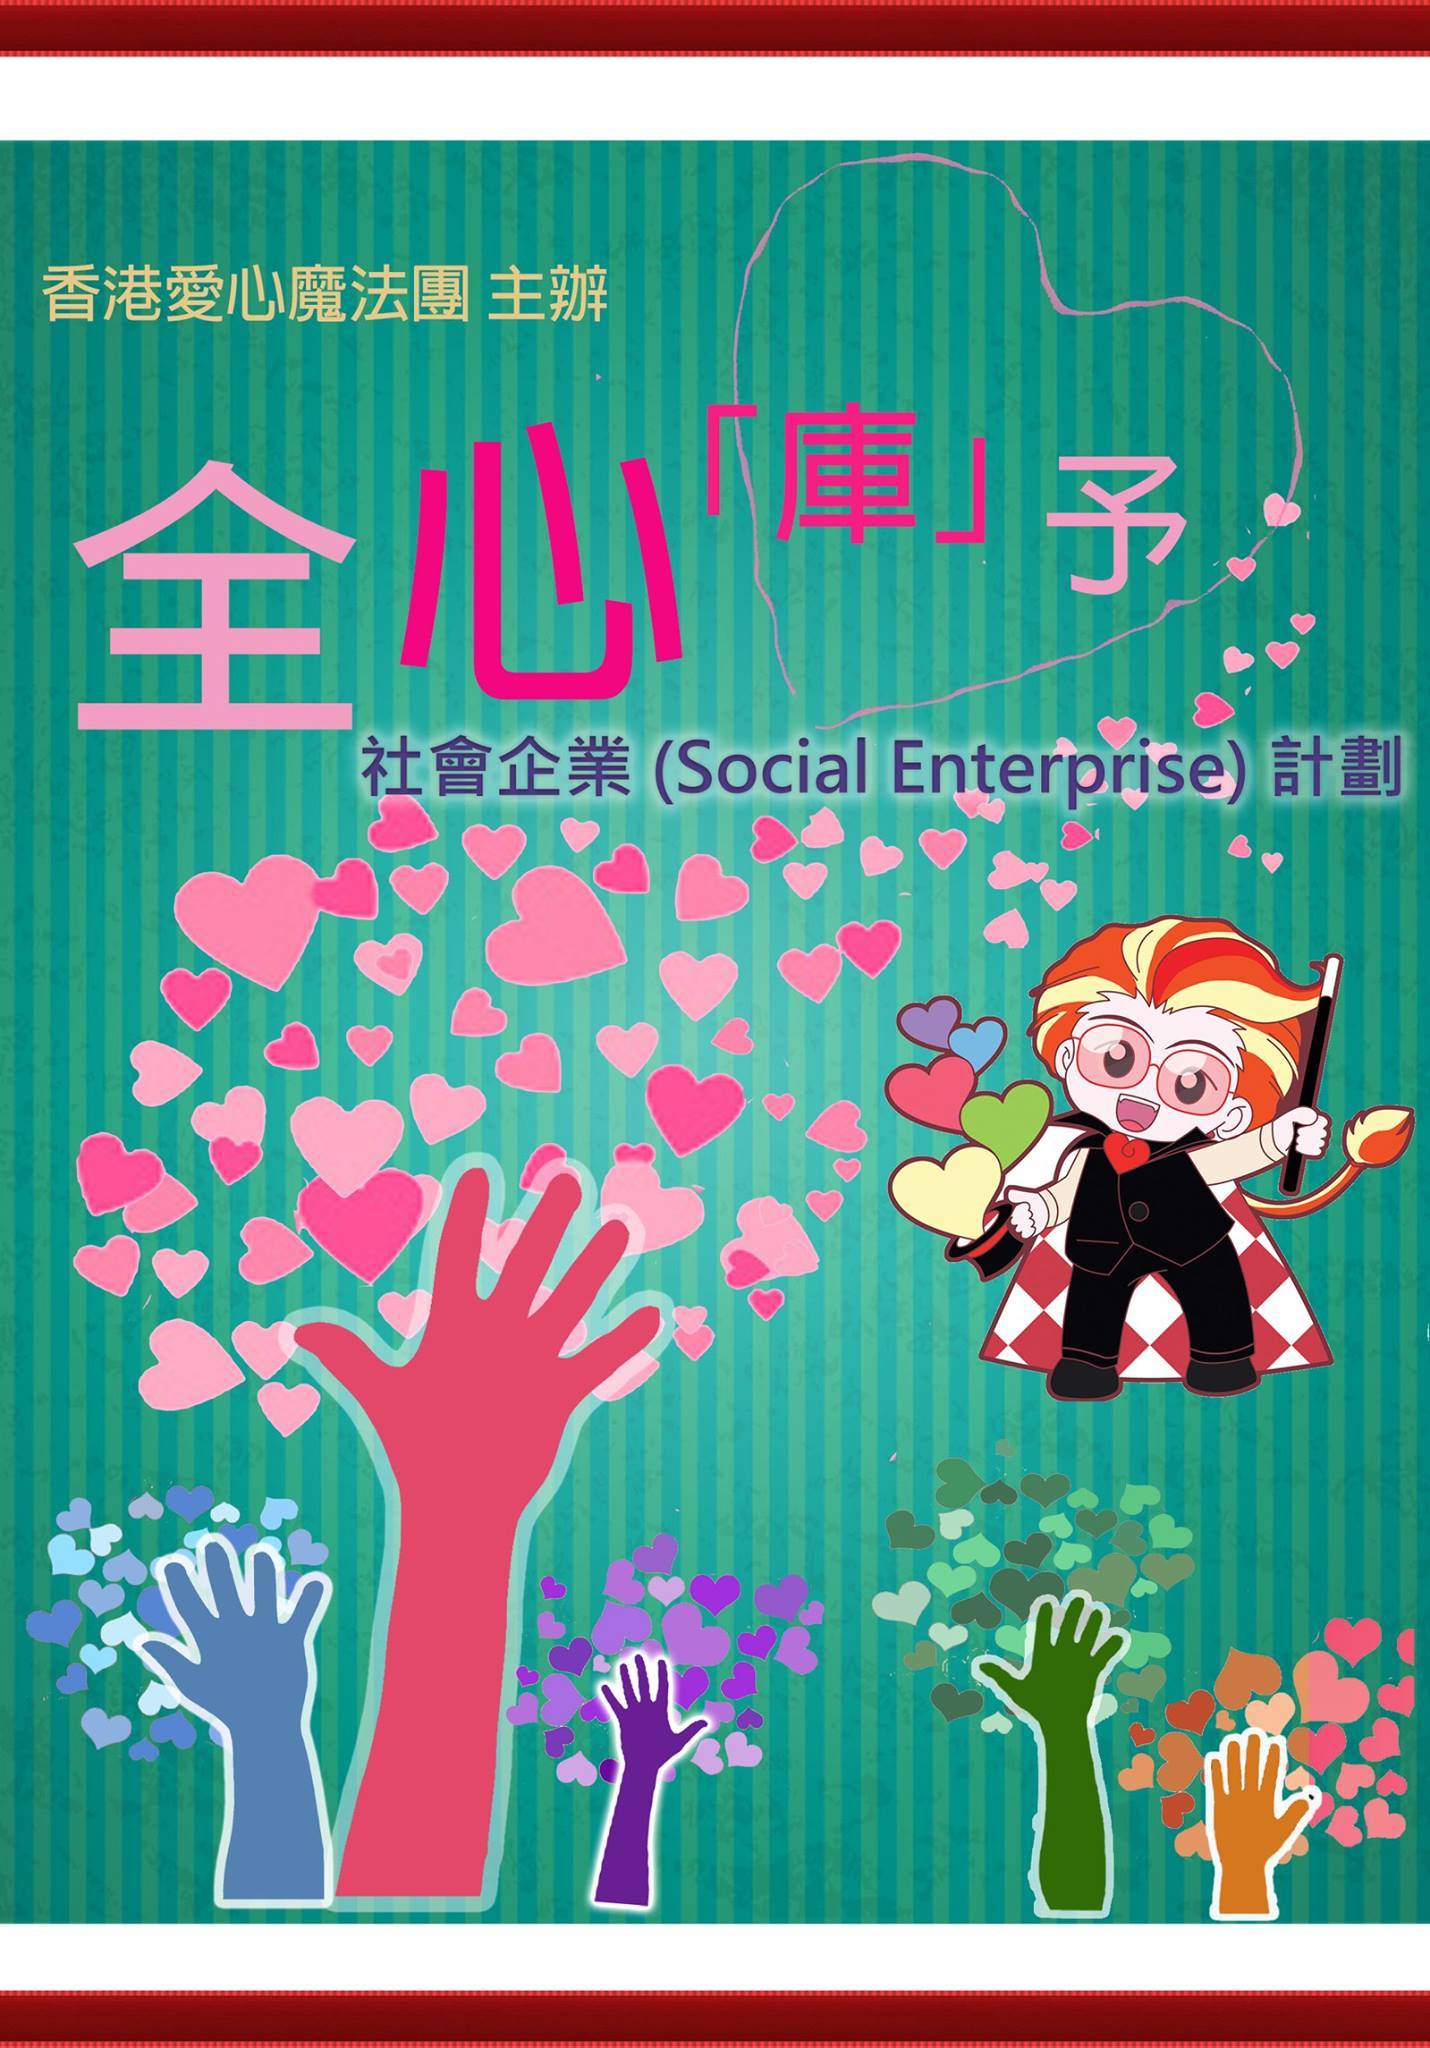 全心庫予 - 社會企業 social enterprise 計劃